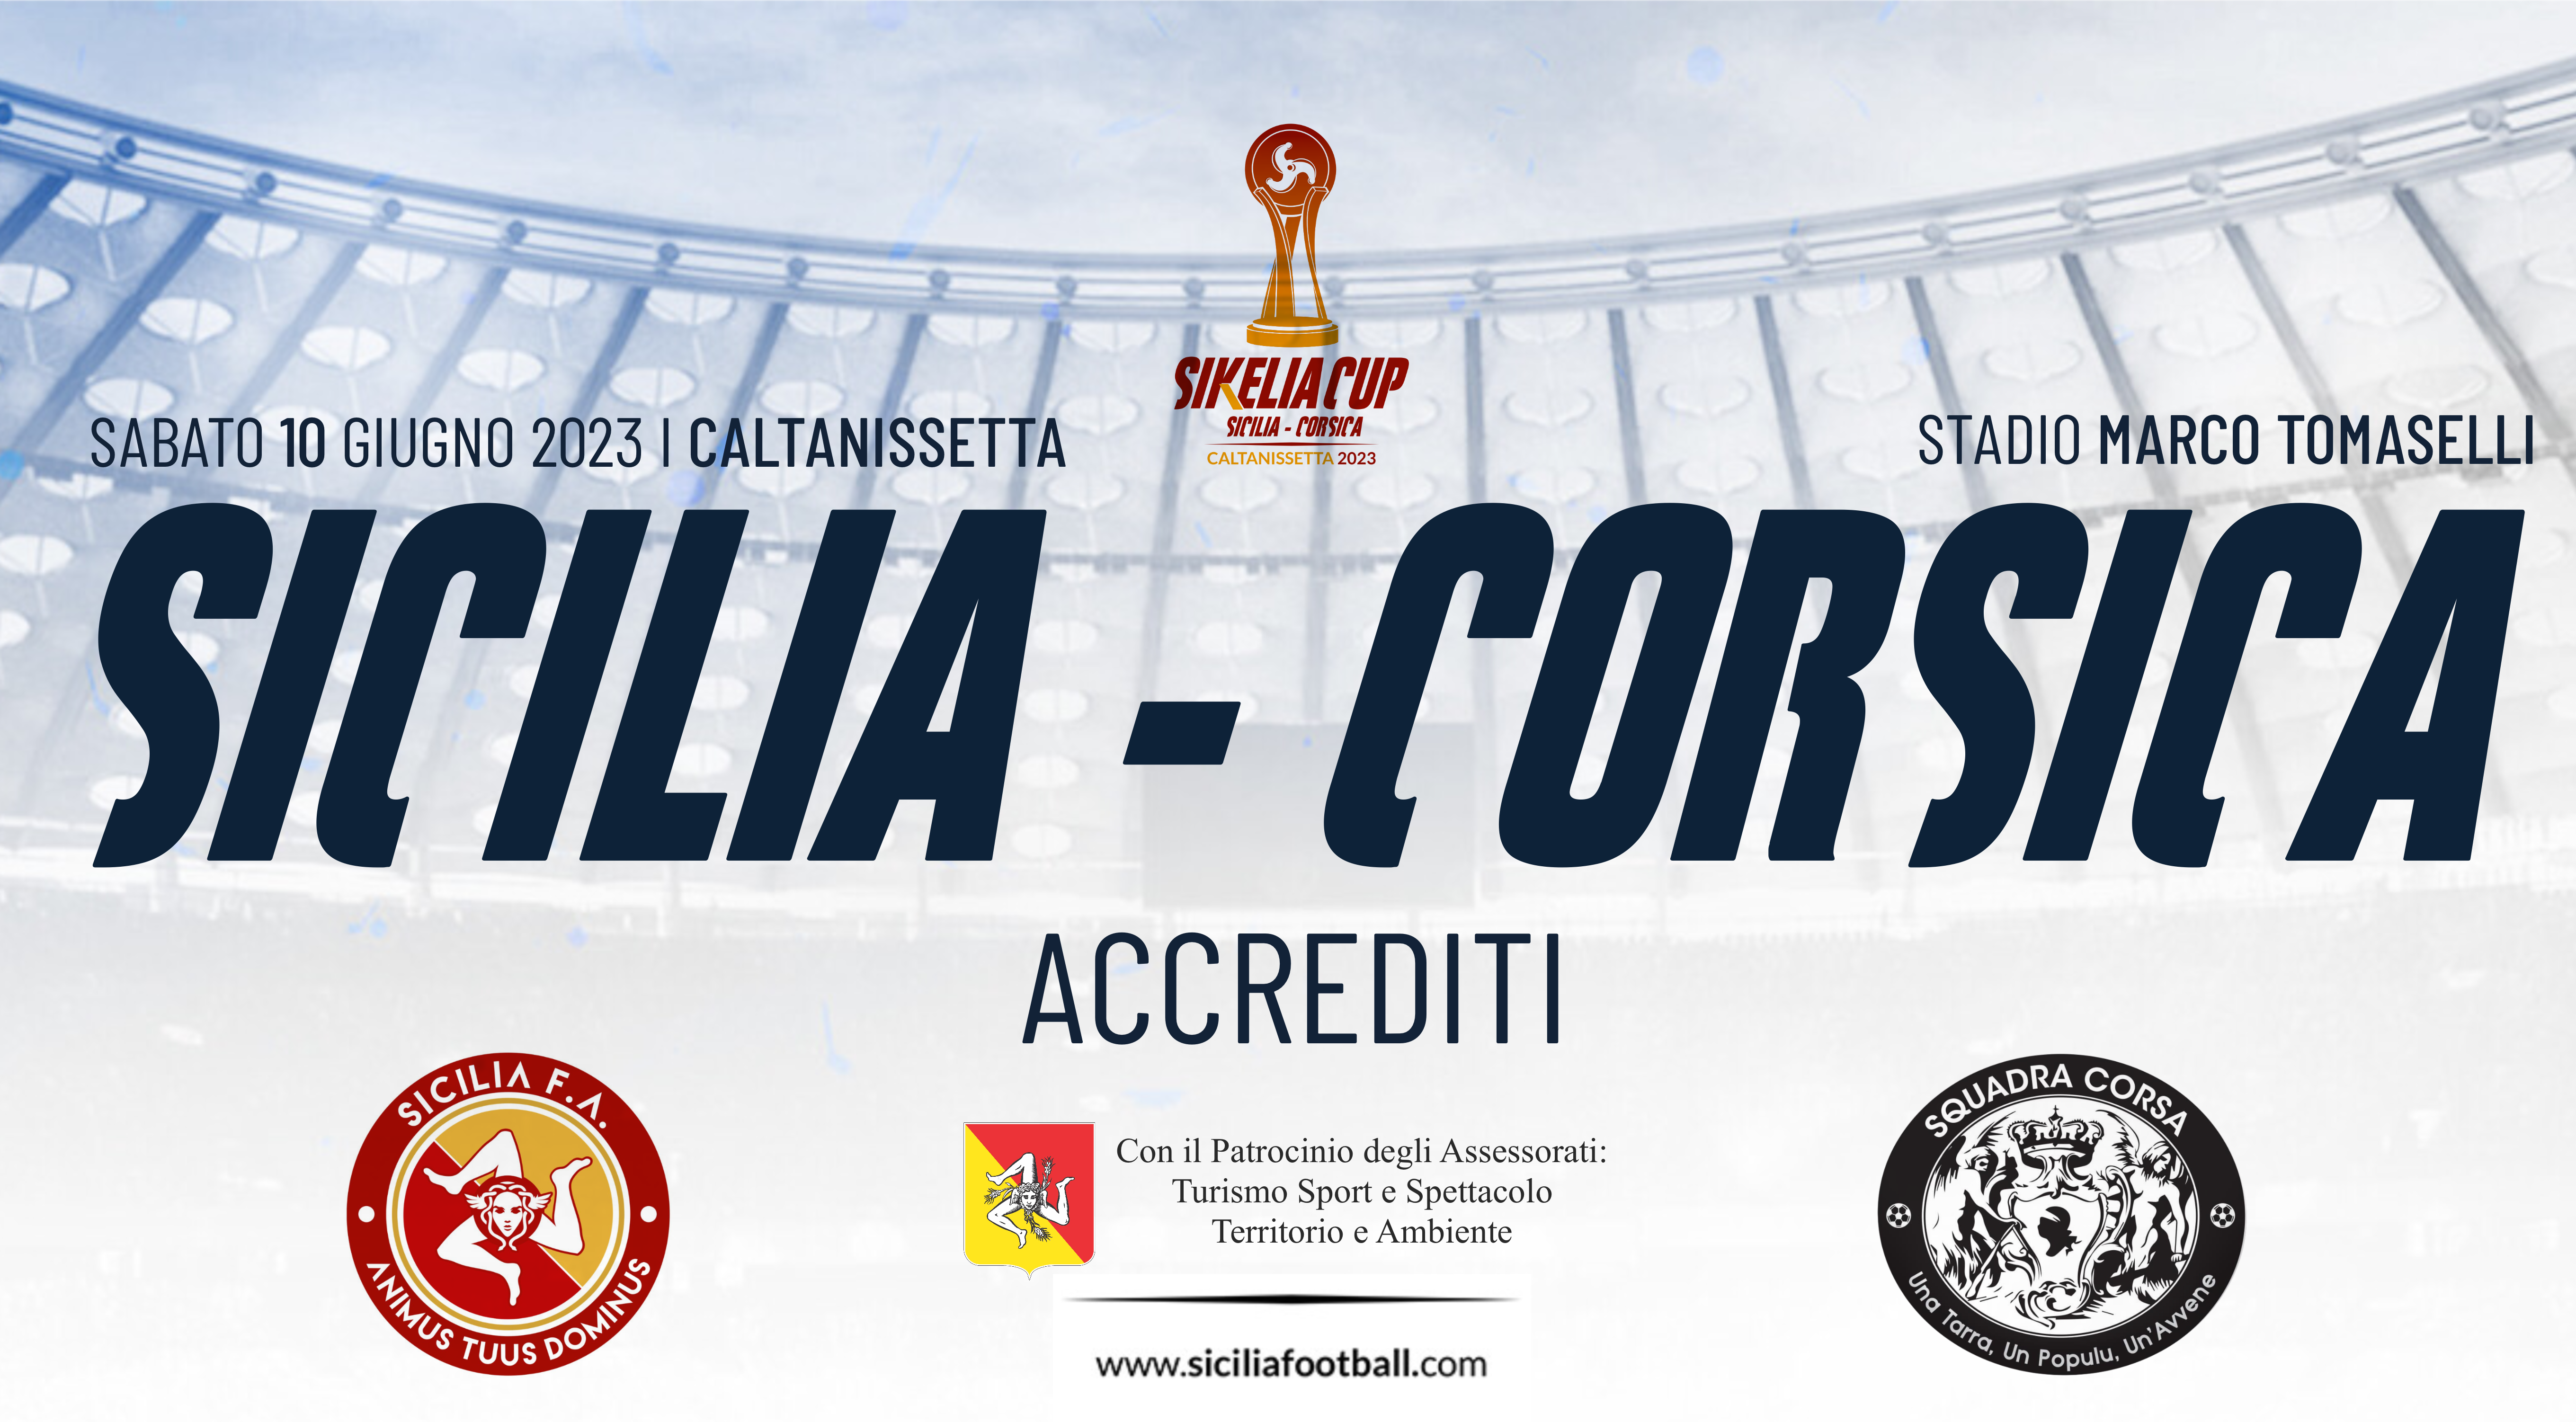 Regolamento Accrediti per la Sikelia Cup, trofeo Sicilia-Corsica